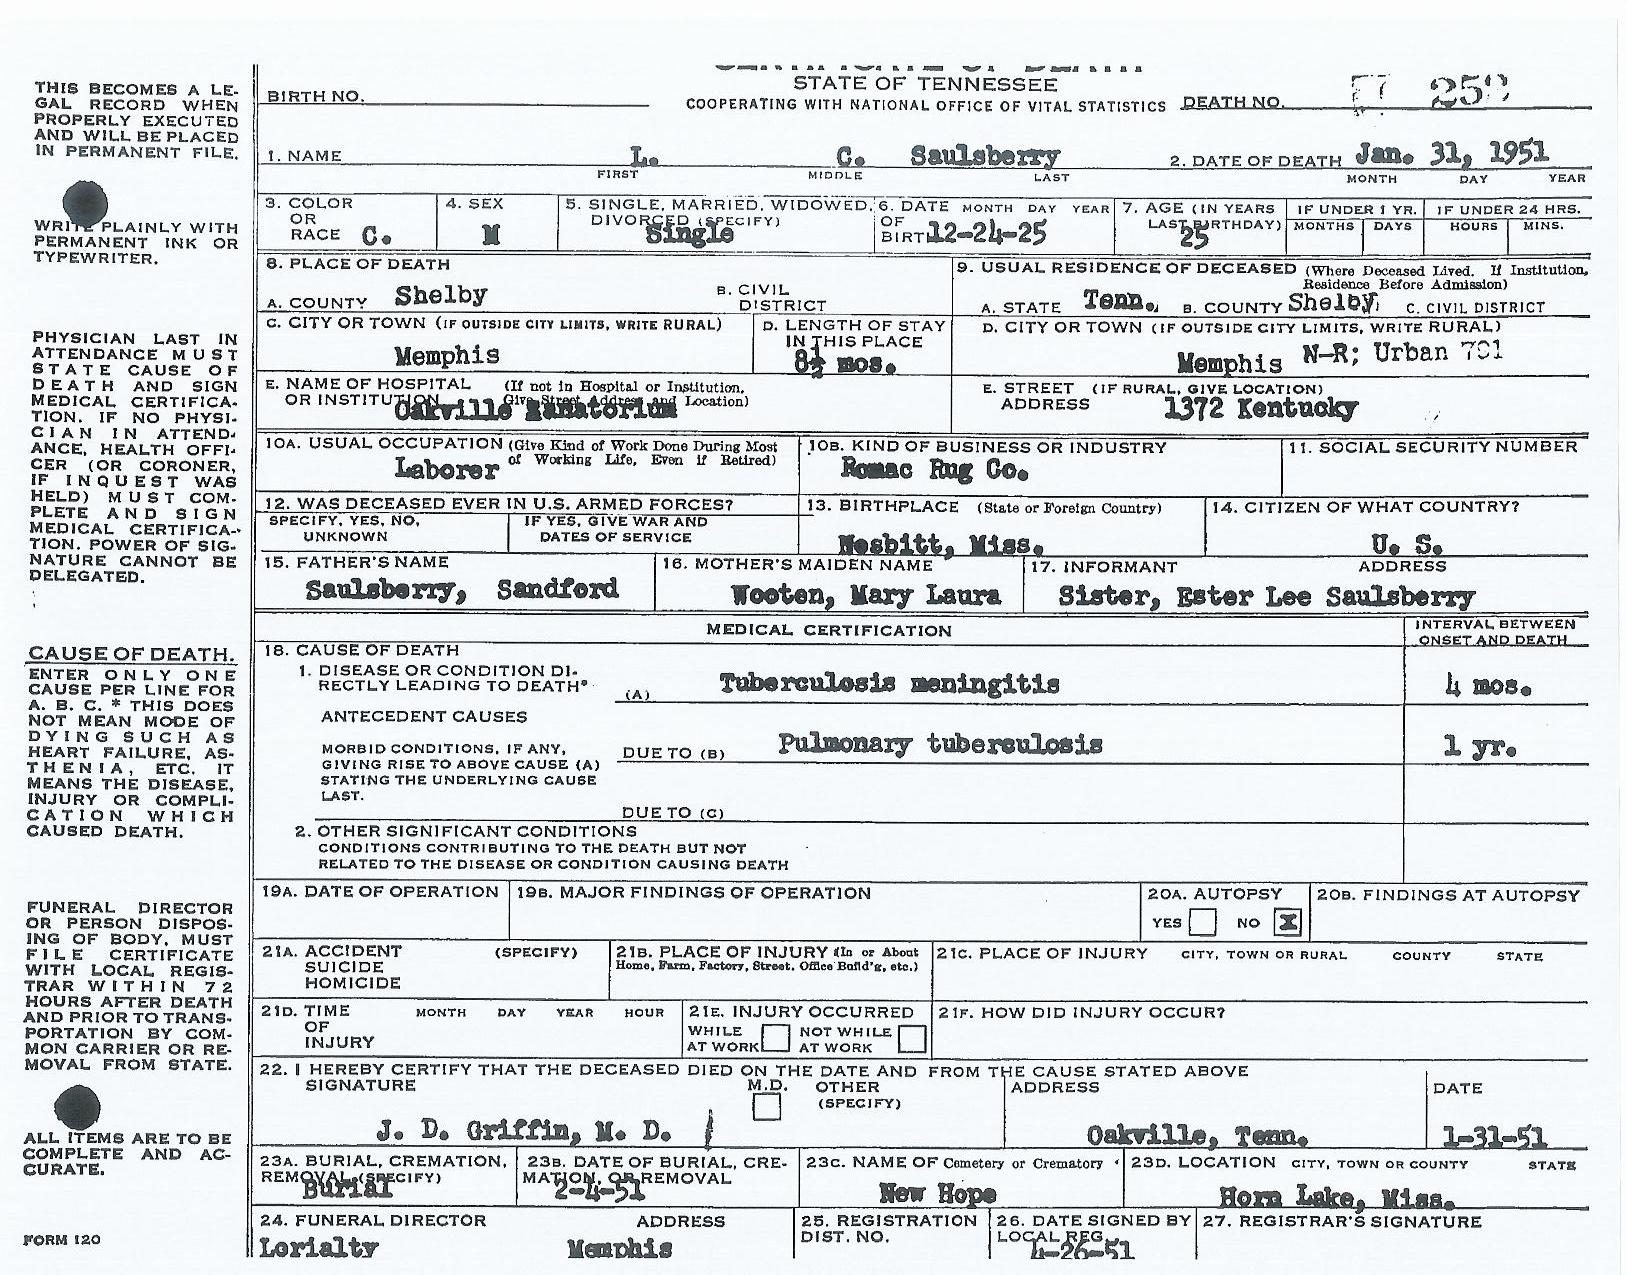 L. C. Saulsberry's Death Certificate